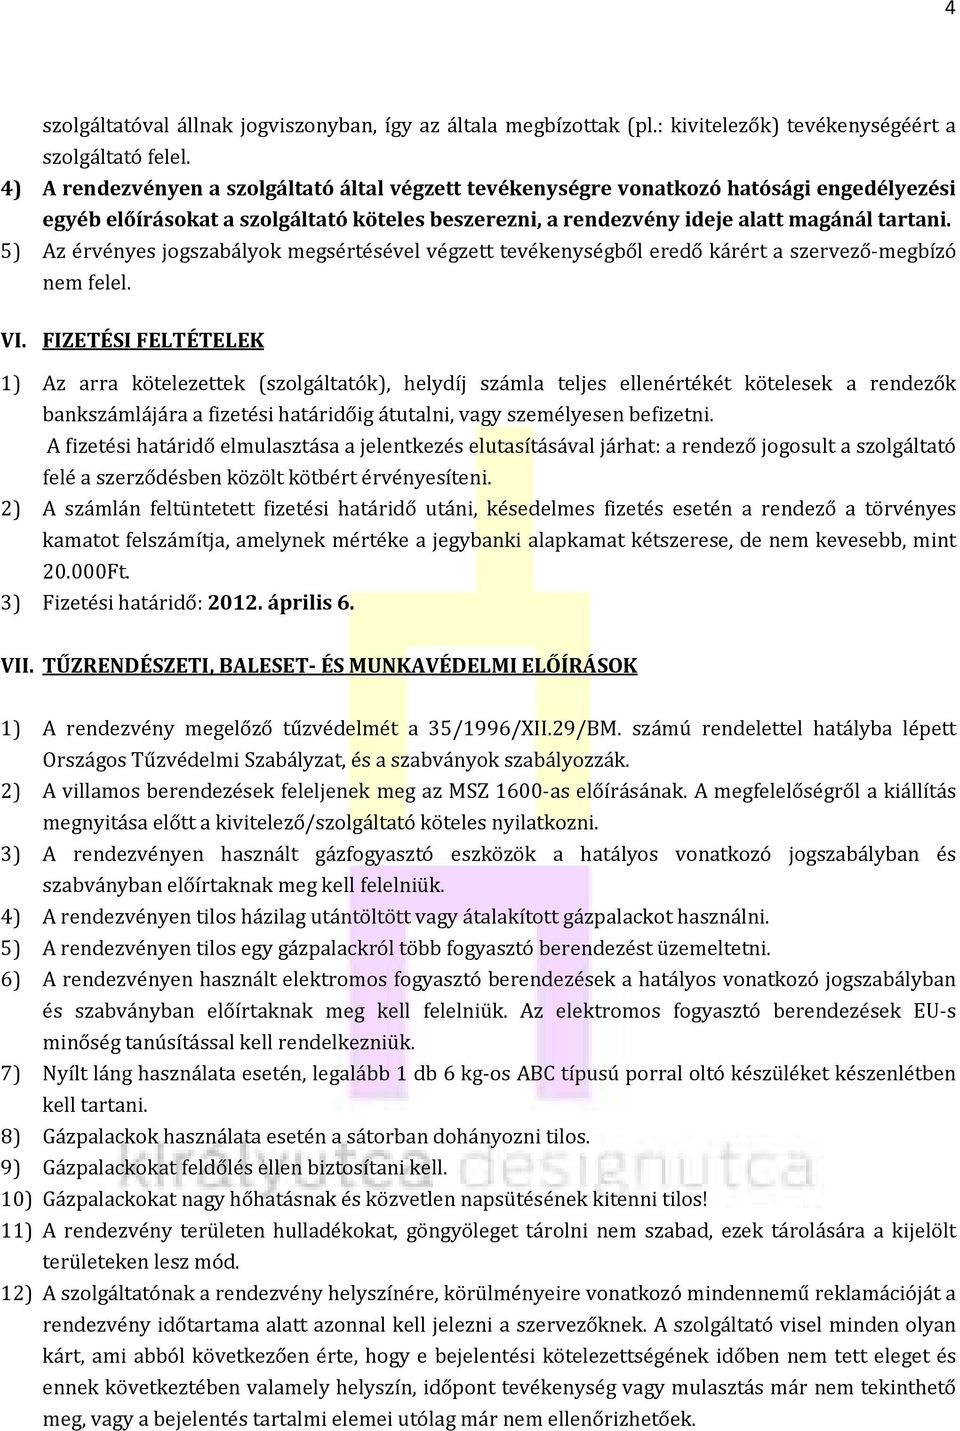 Rendezvény Szabályzat - PDF Ingyenes letöltés